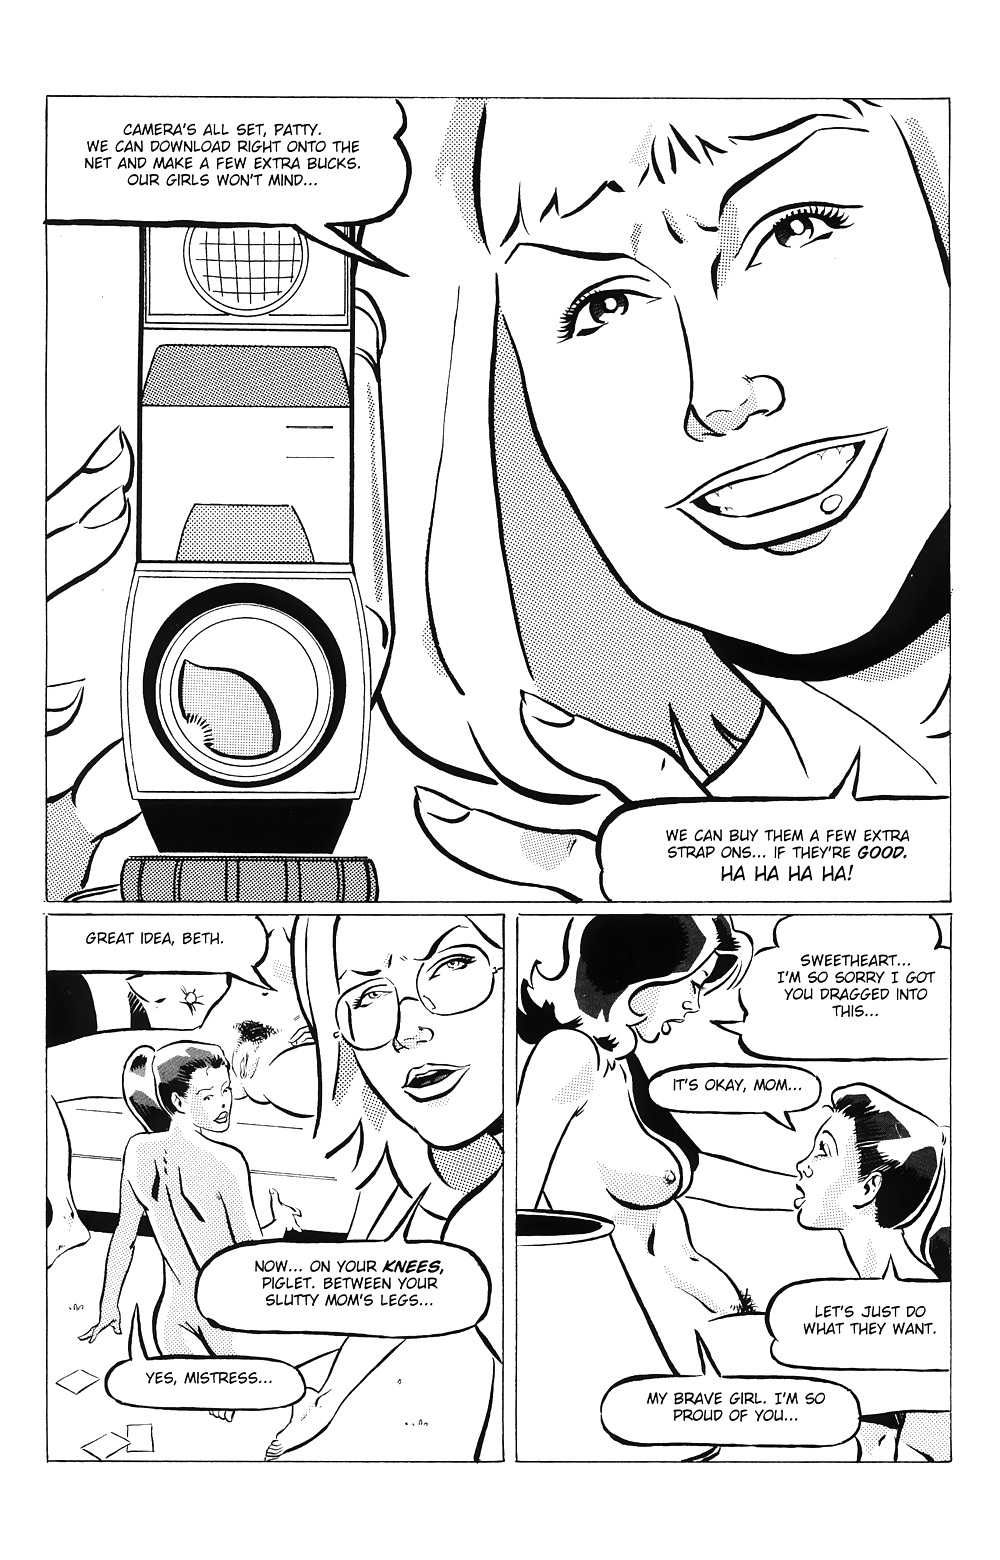 Hausfrauen Am Spiel # 04 Special - Eros-Comics Von Rebecca #24141393